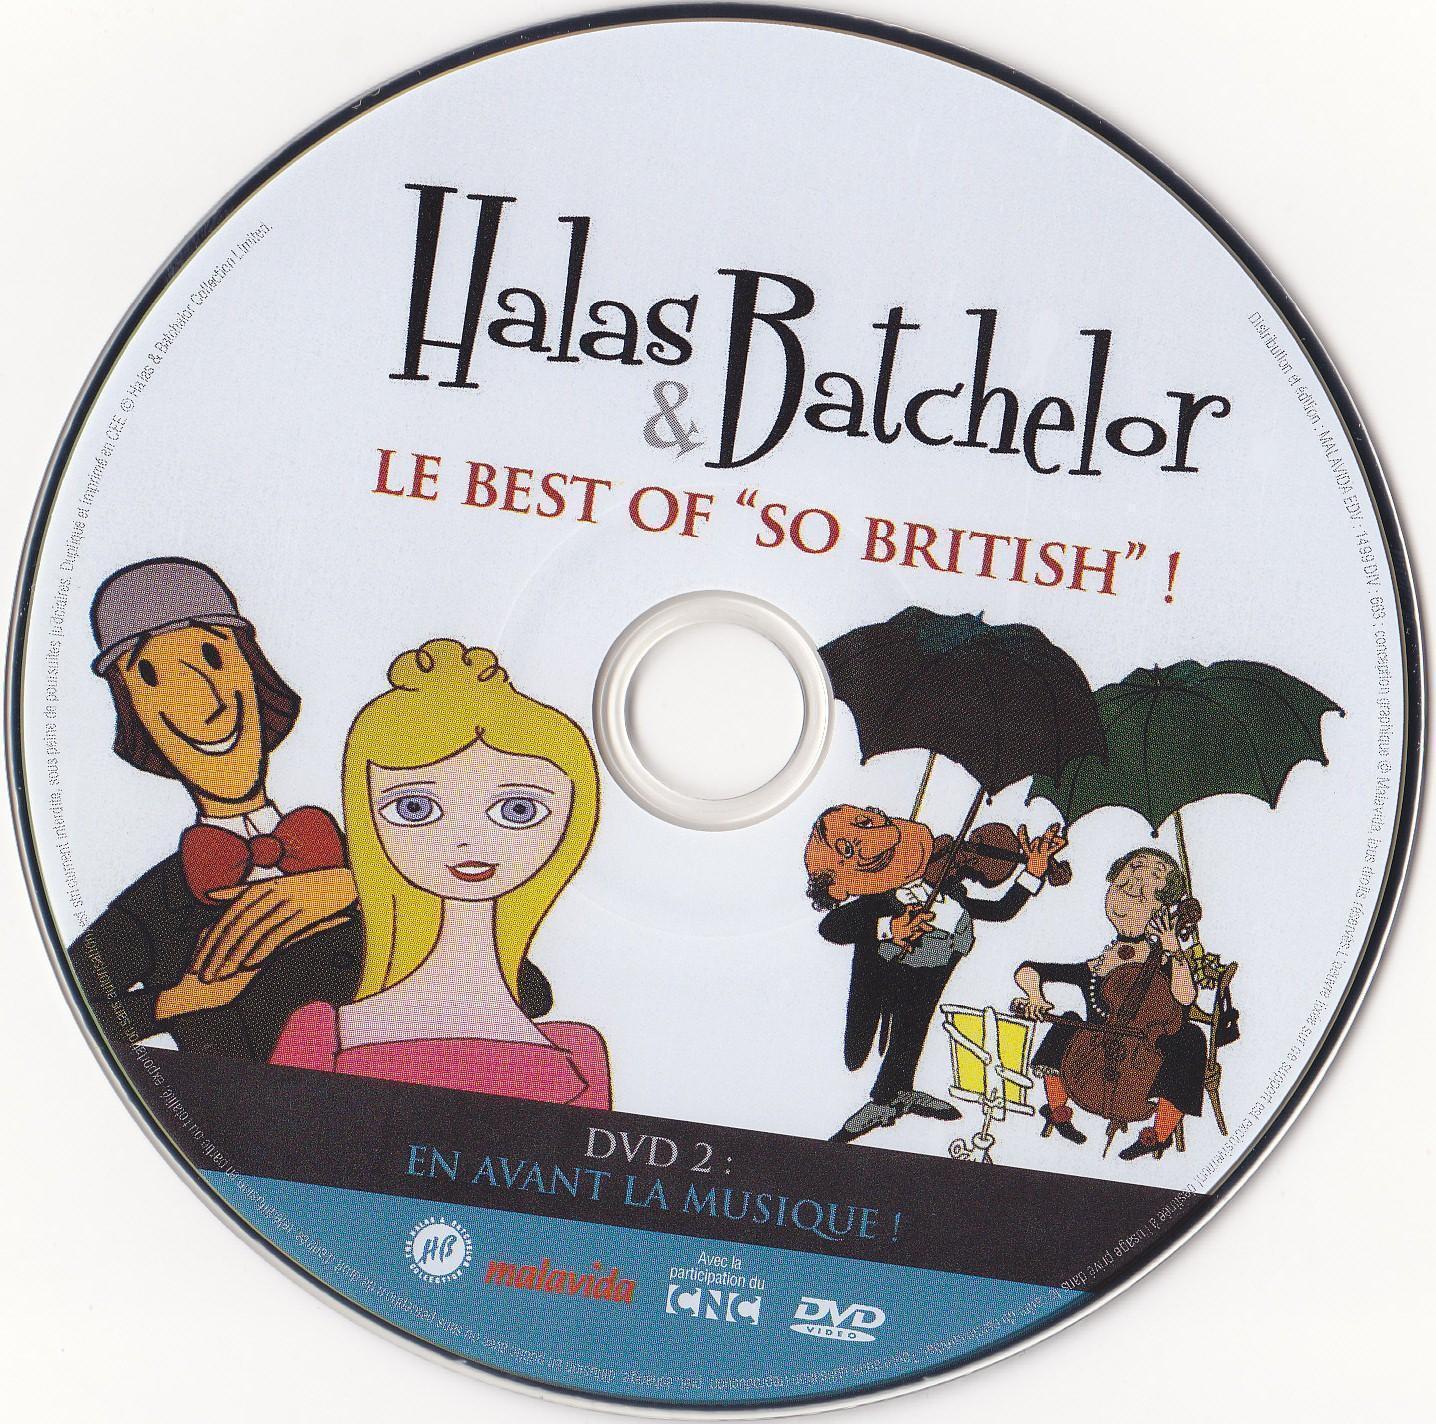 Halas & Batchelor - Le Best Of -So British DVD 2